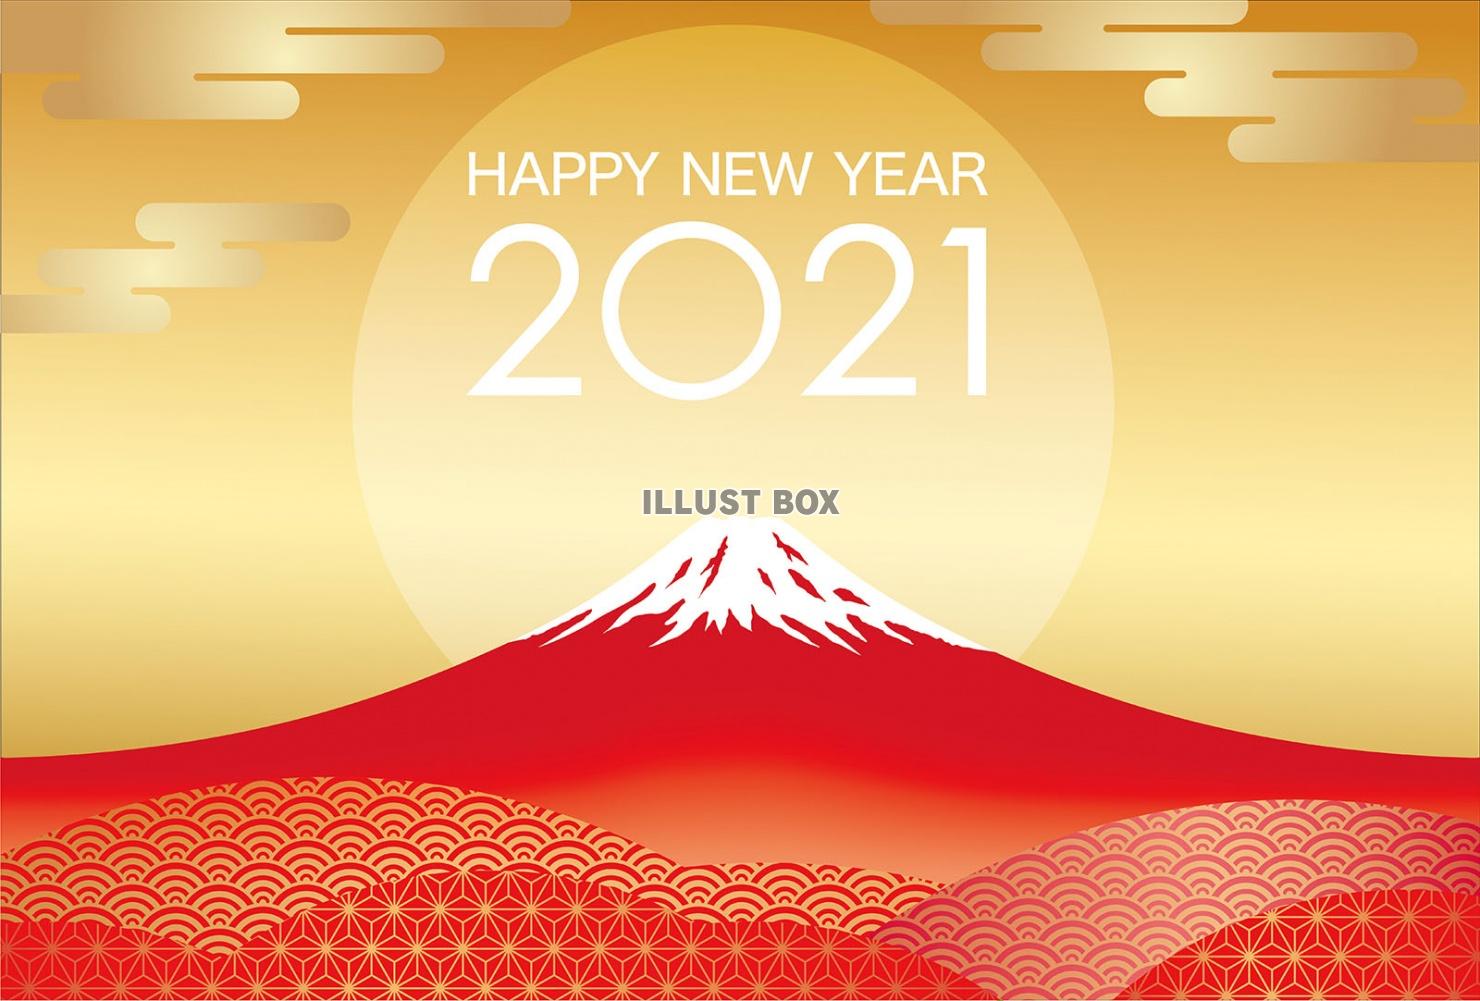 無料イラスト 21年 富士山の年賀状テンプレート